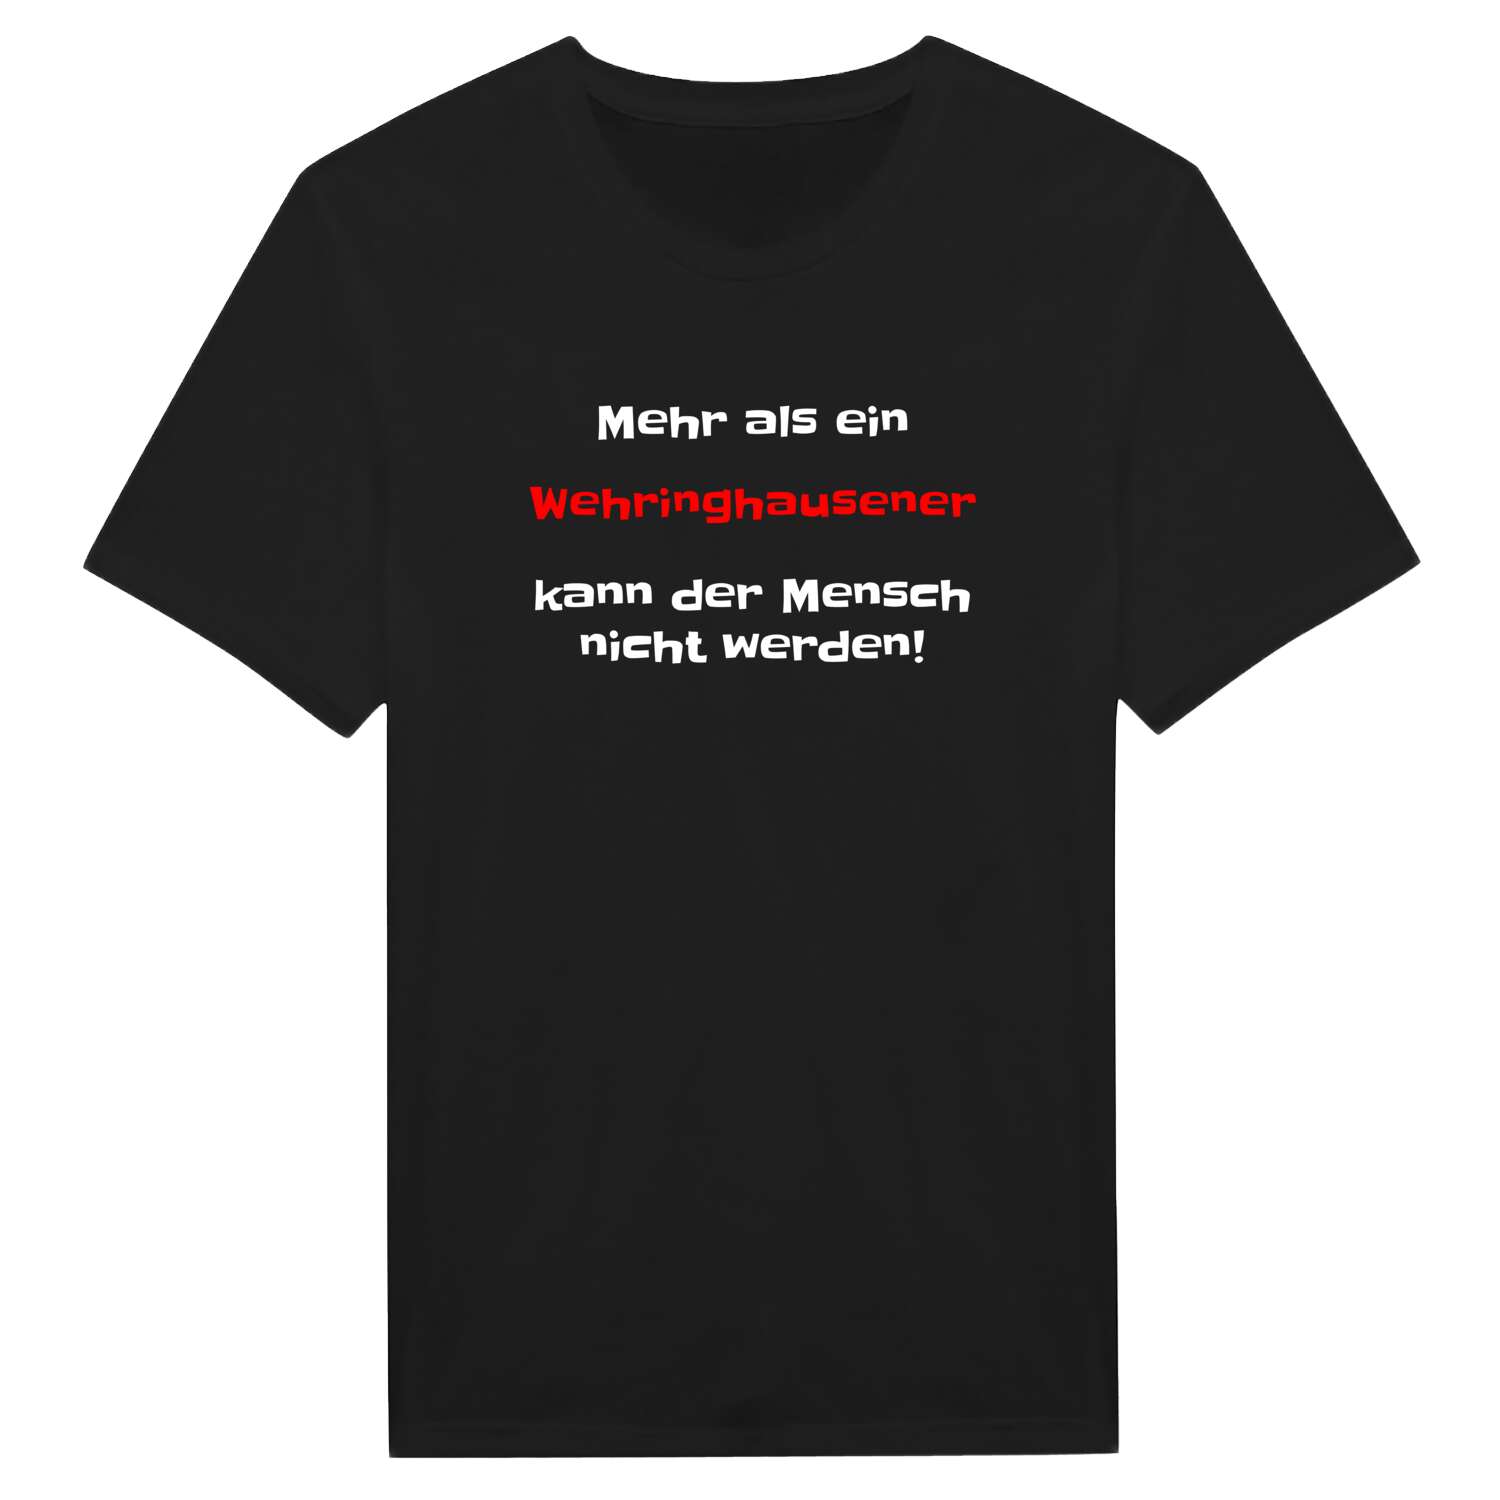 Wehringhausen T-Shirt »Mehr als ein«